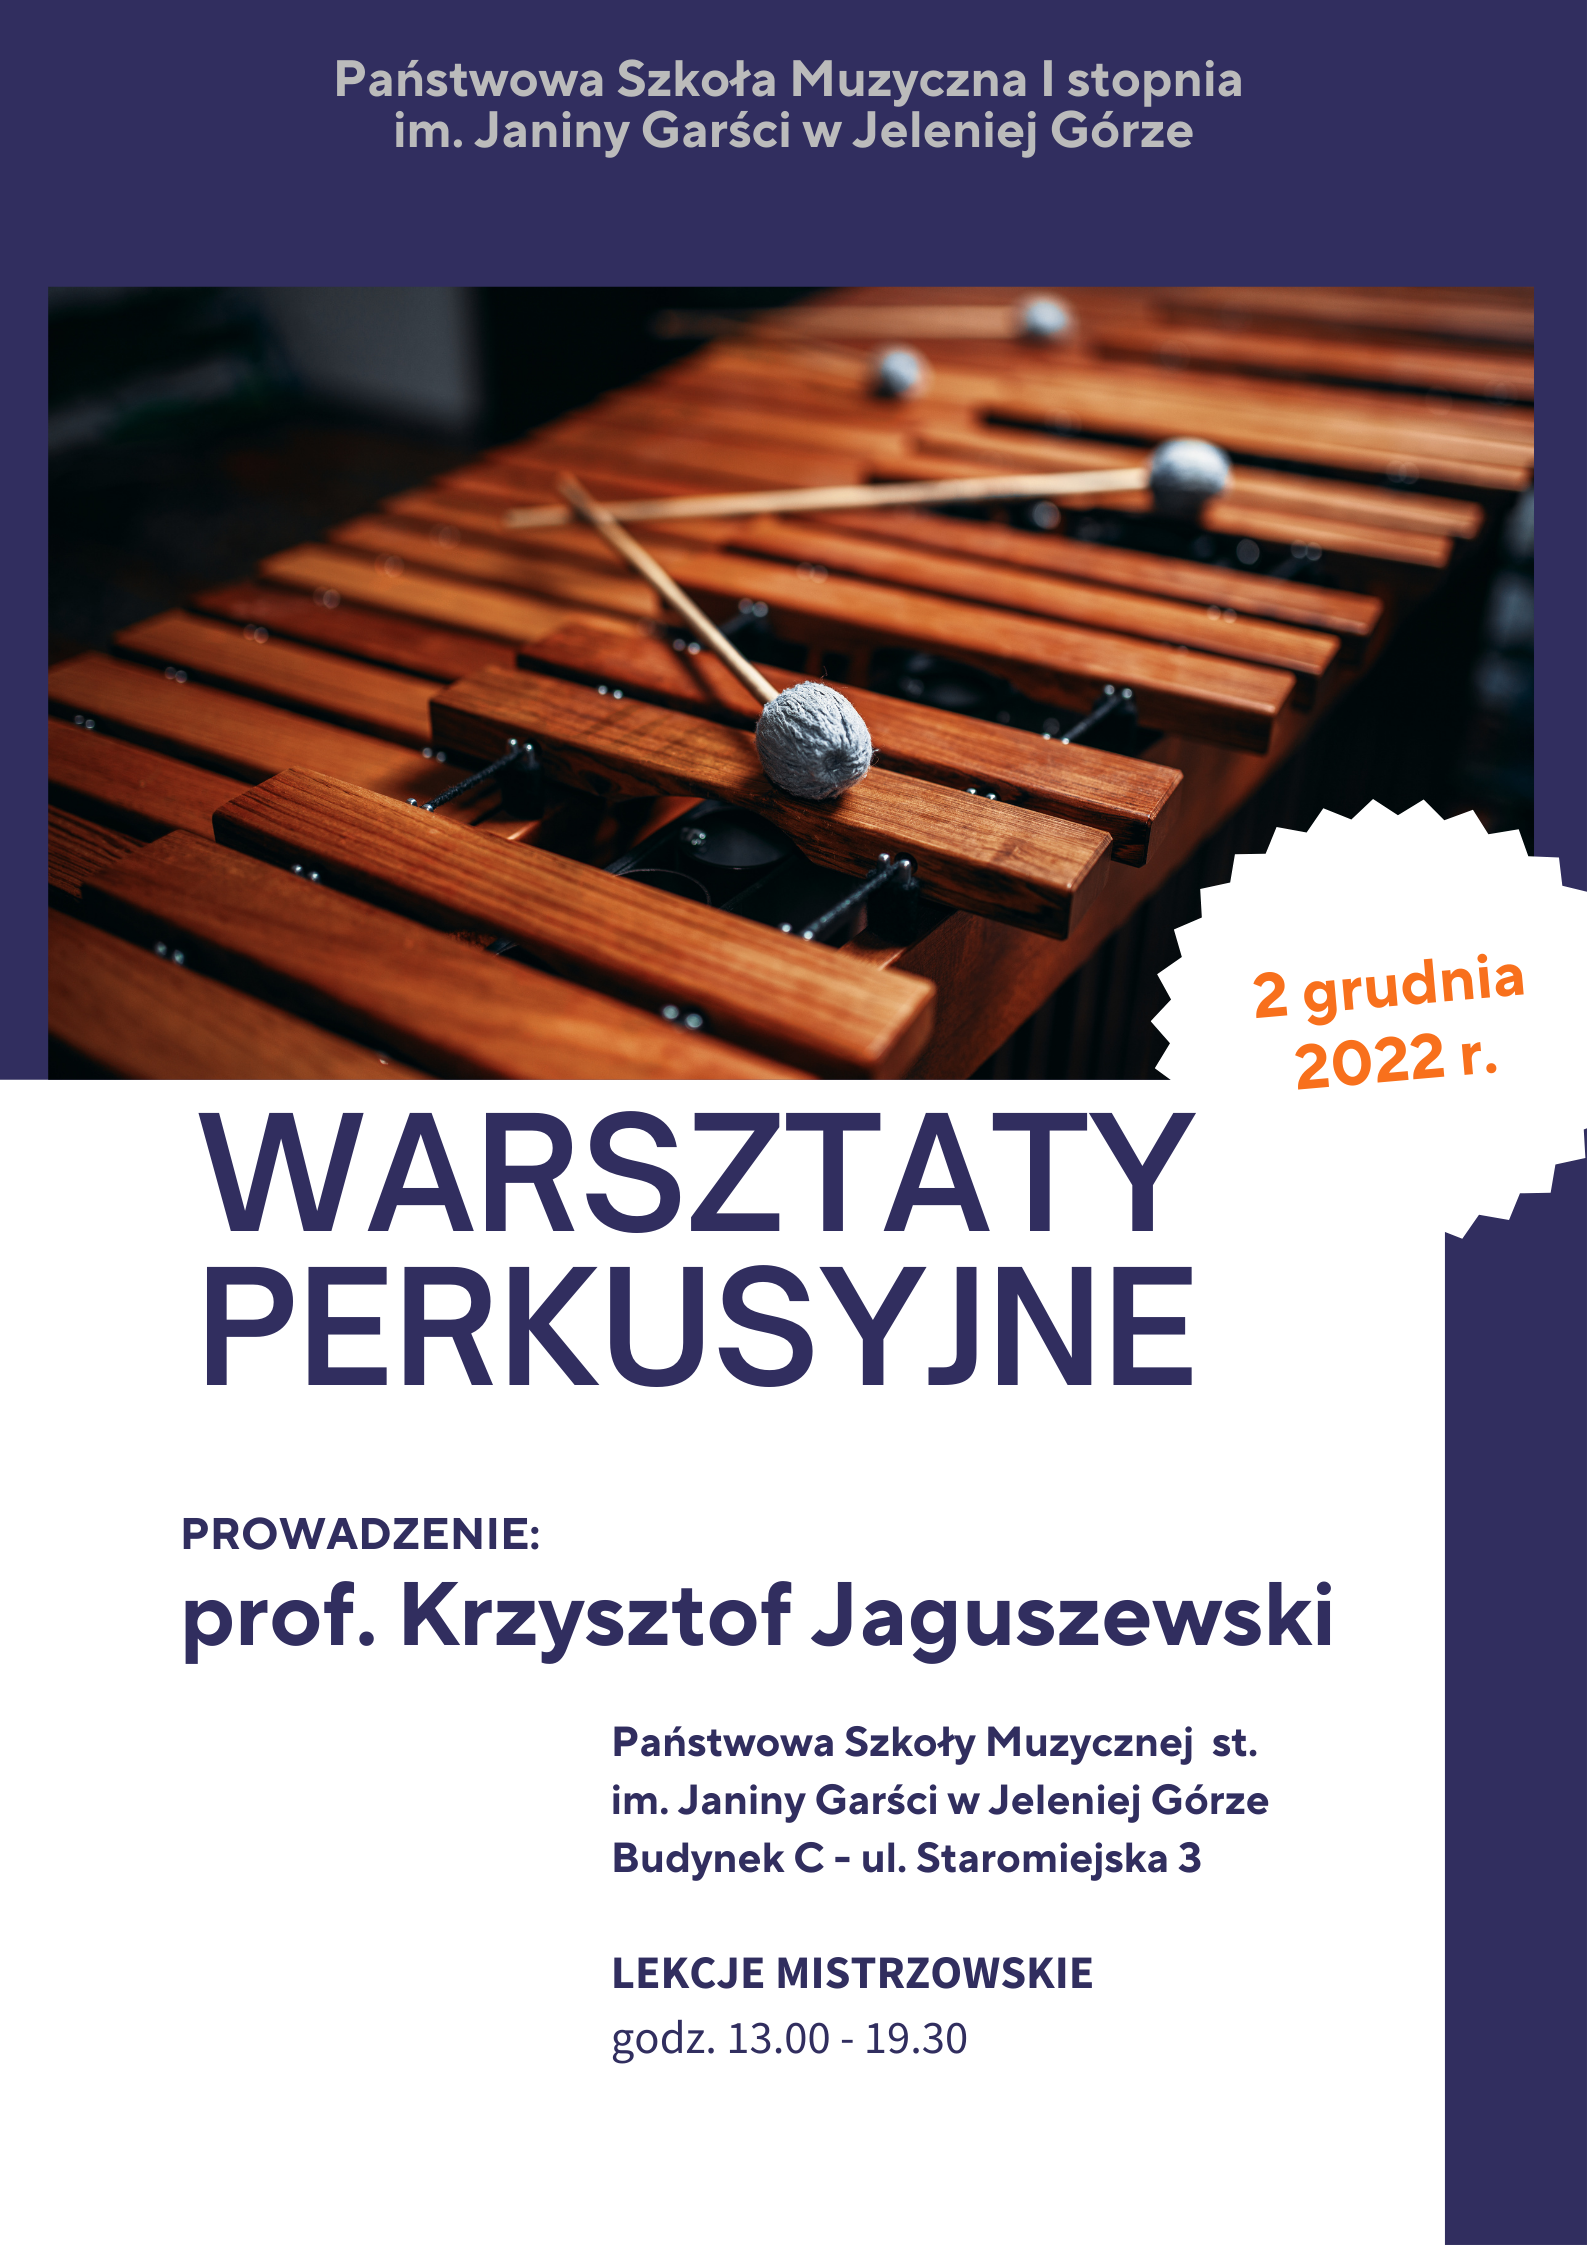  Plakat reklamujący warsztaty perkusyjne odbywające się w PSM I st. im. J. Garści w dniu 2 grudnia 2022 r.